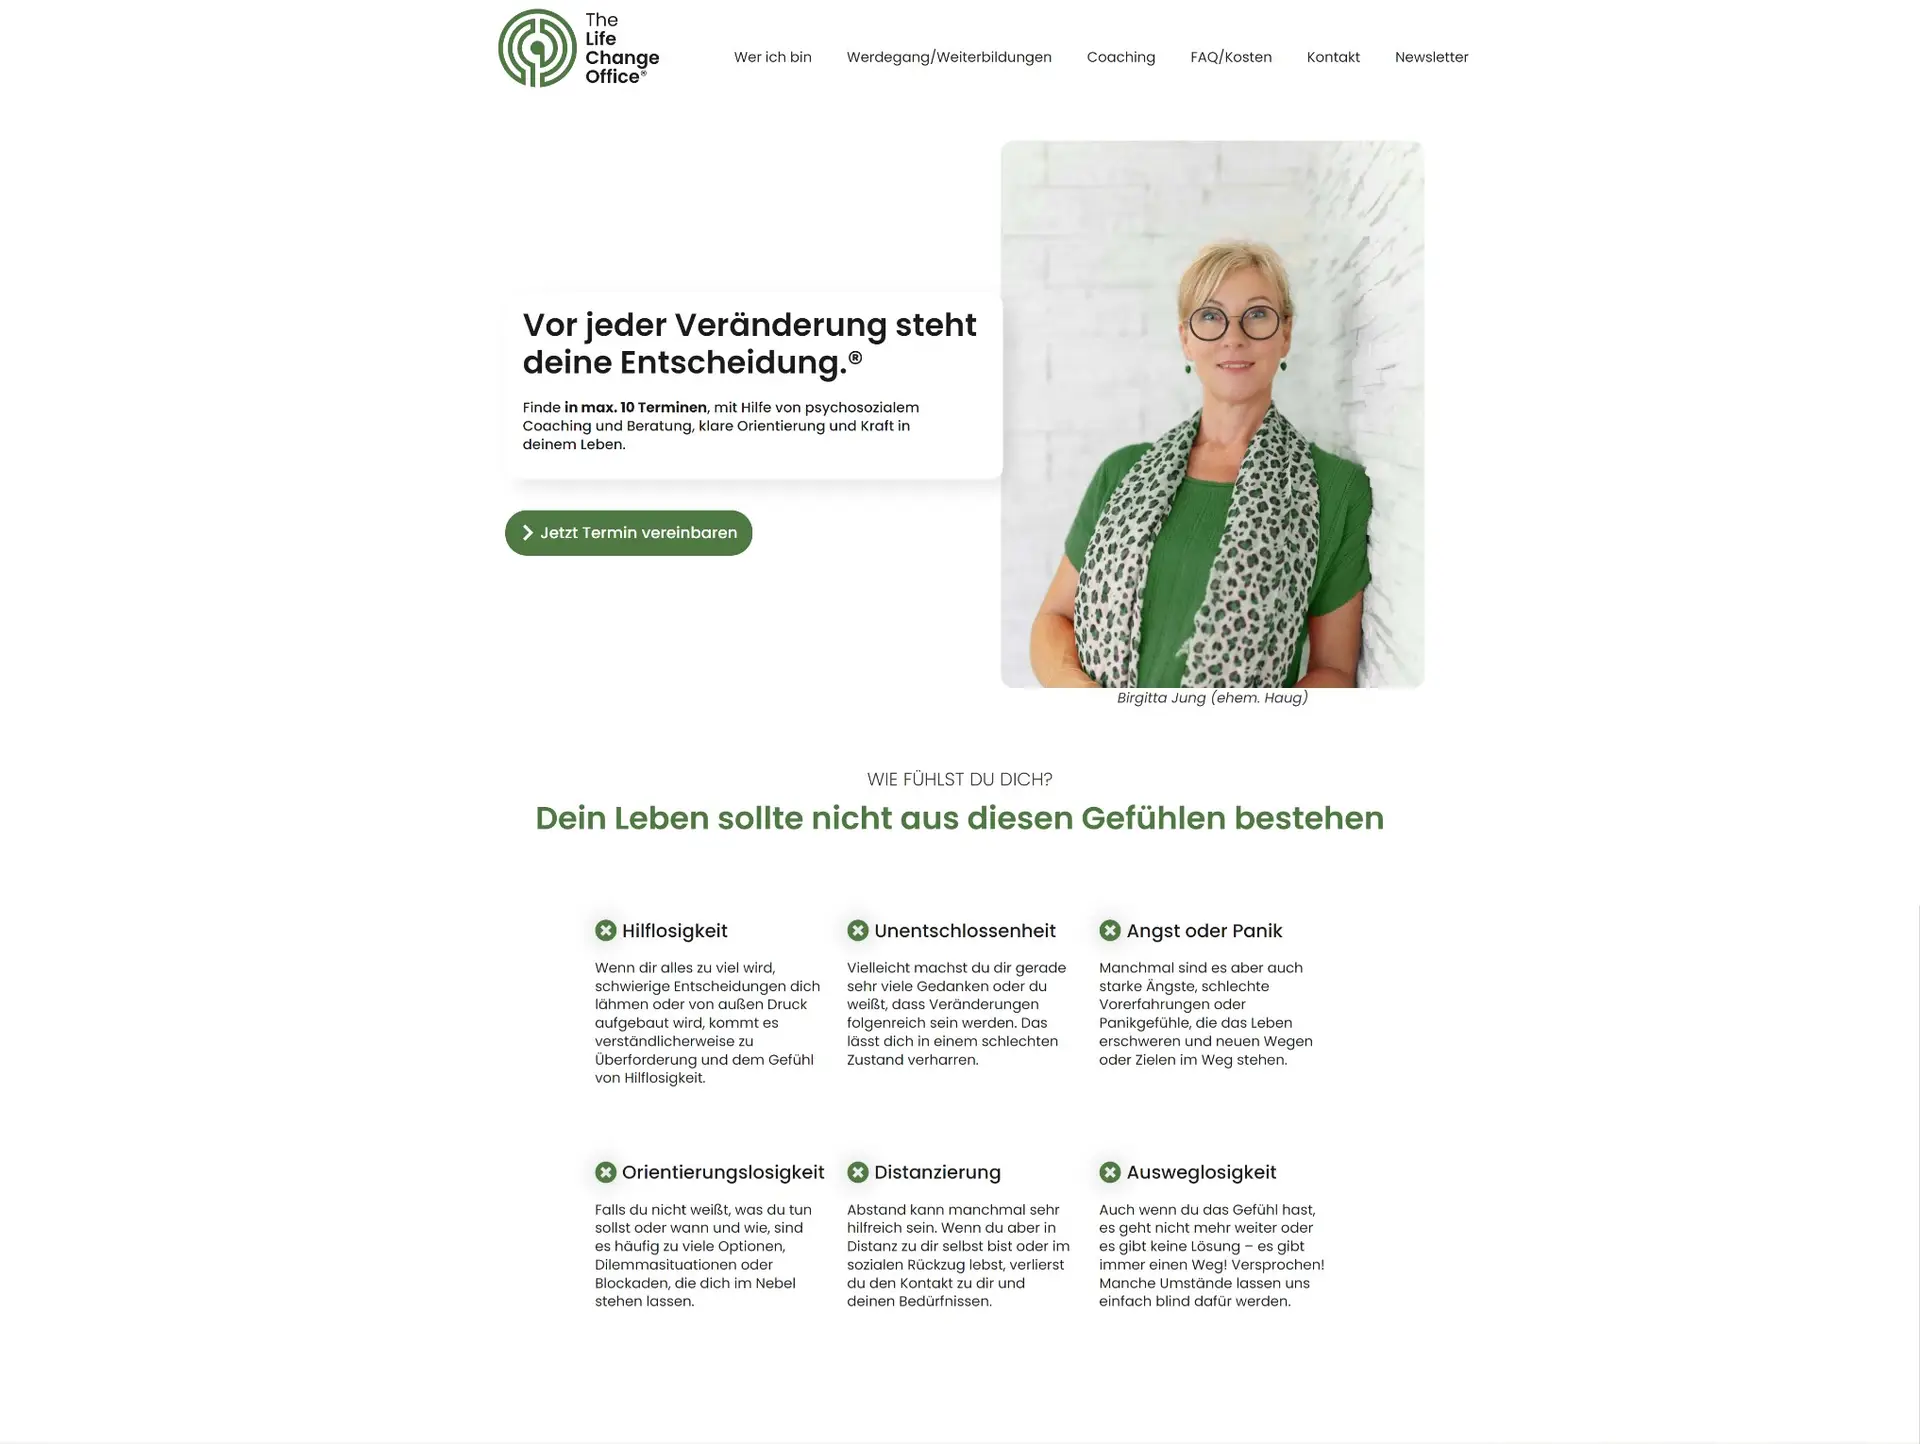 Startseite der Life Coachin Birgitta Jung - The Life Change Office